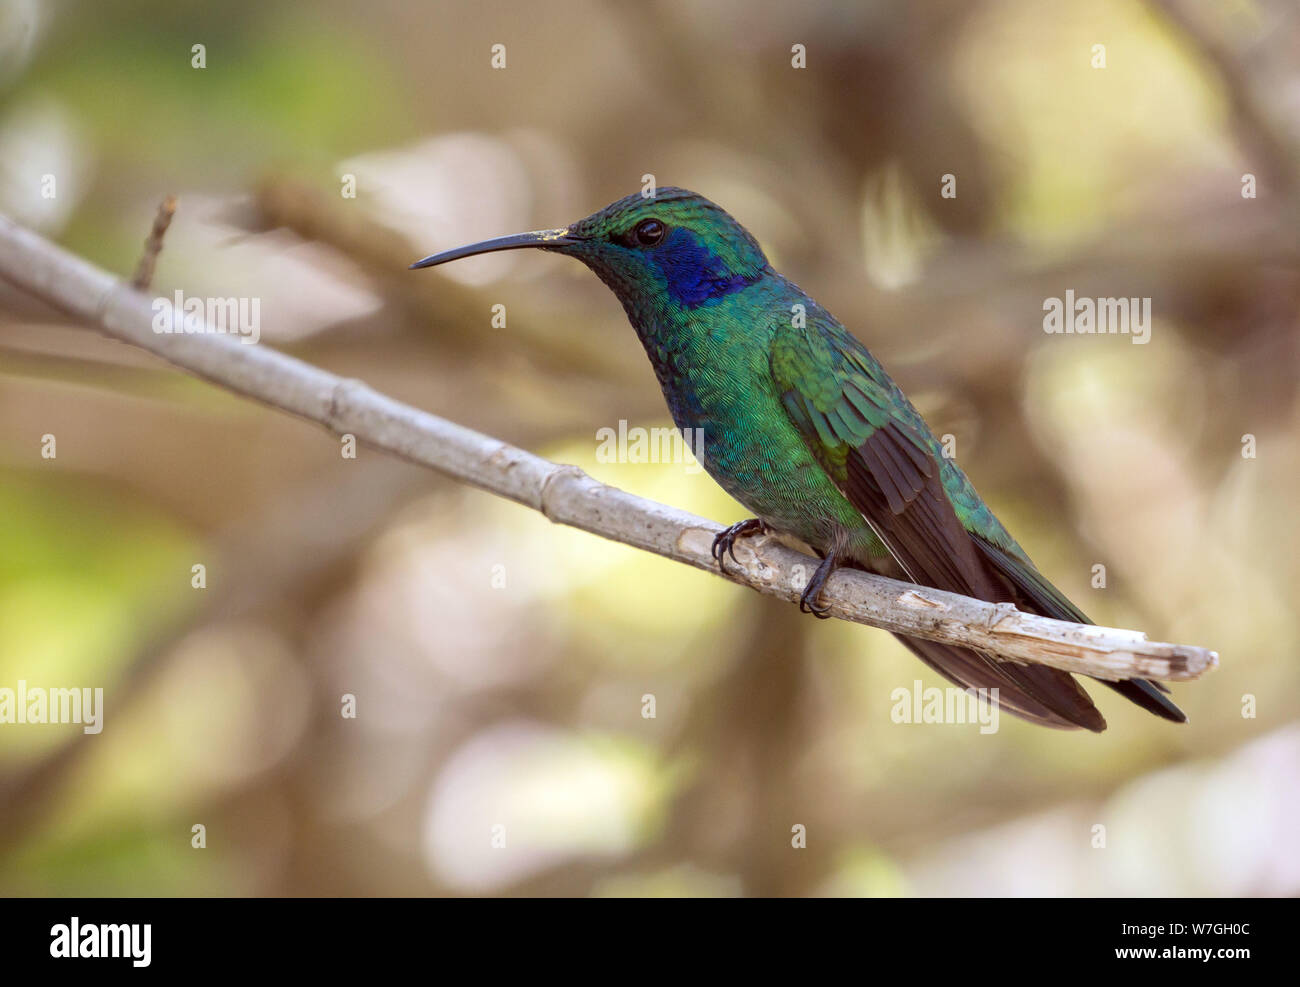 Gros plan du moindre Violet-ear hummingbird perching sur une branche,Panama.nom scientifique de cet oiseau est cyanotus Colibri. Banque D'Images